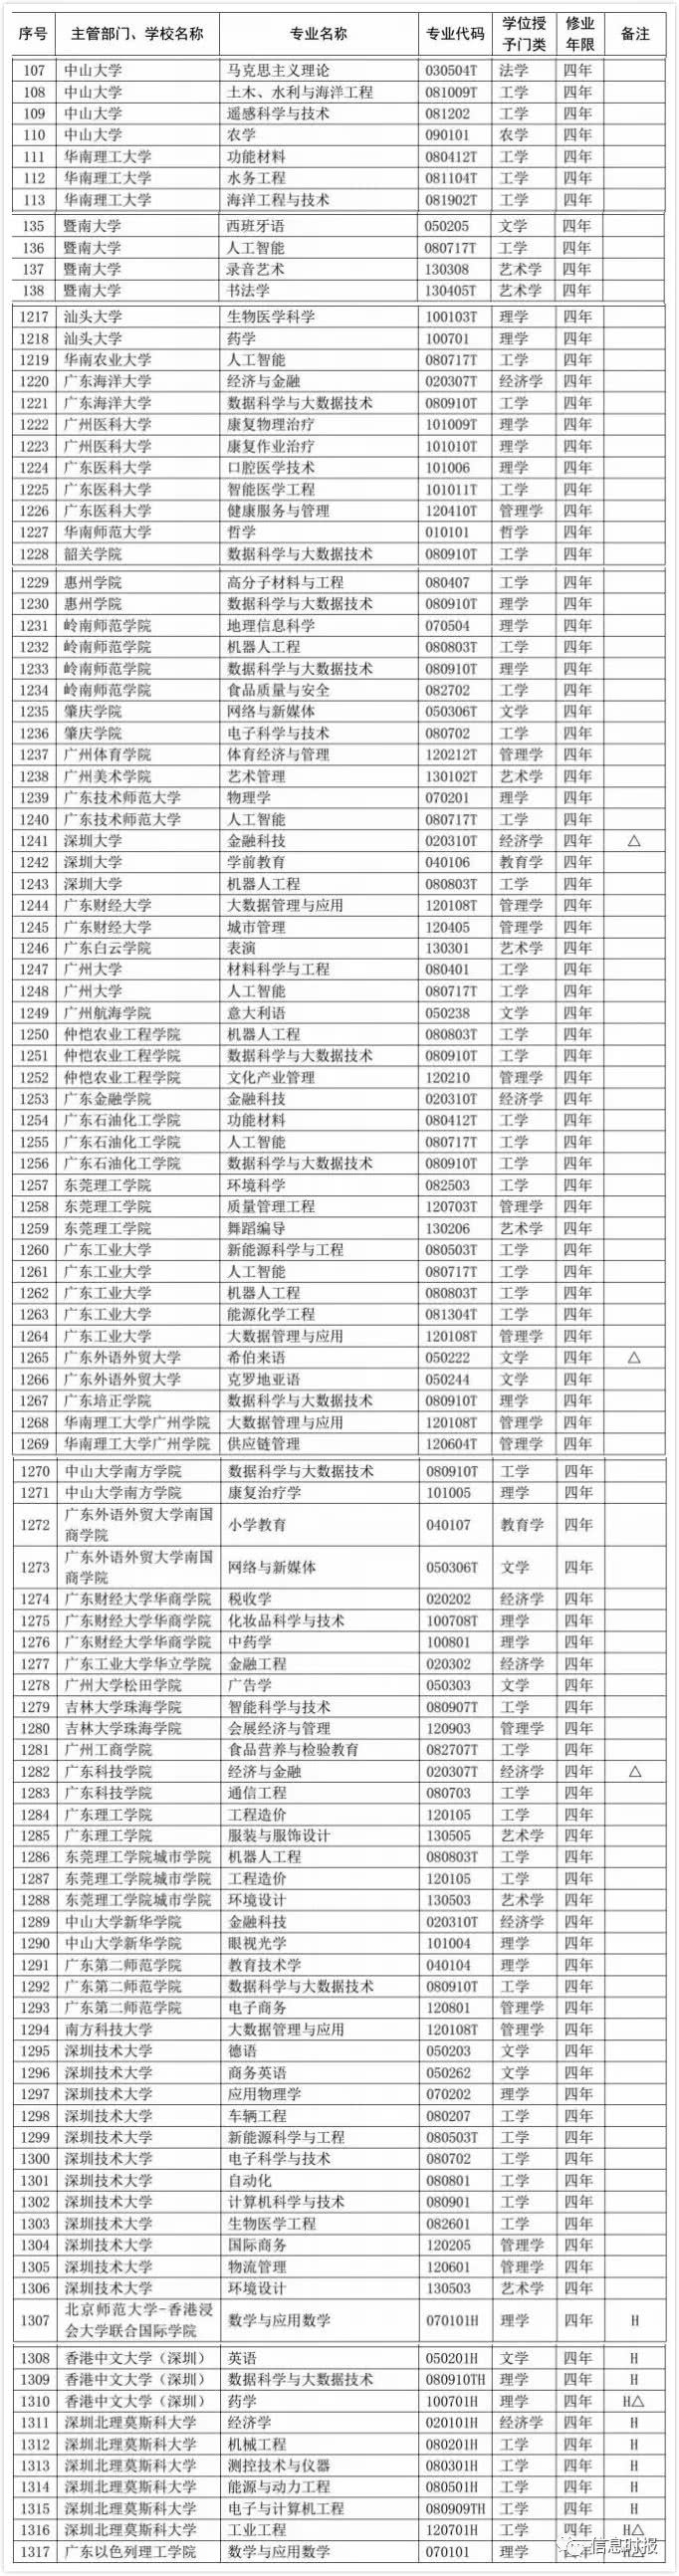 2020年广东高校新增120个本科专业17个专业被撤销